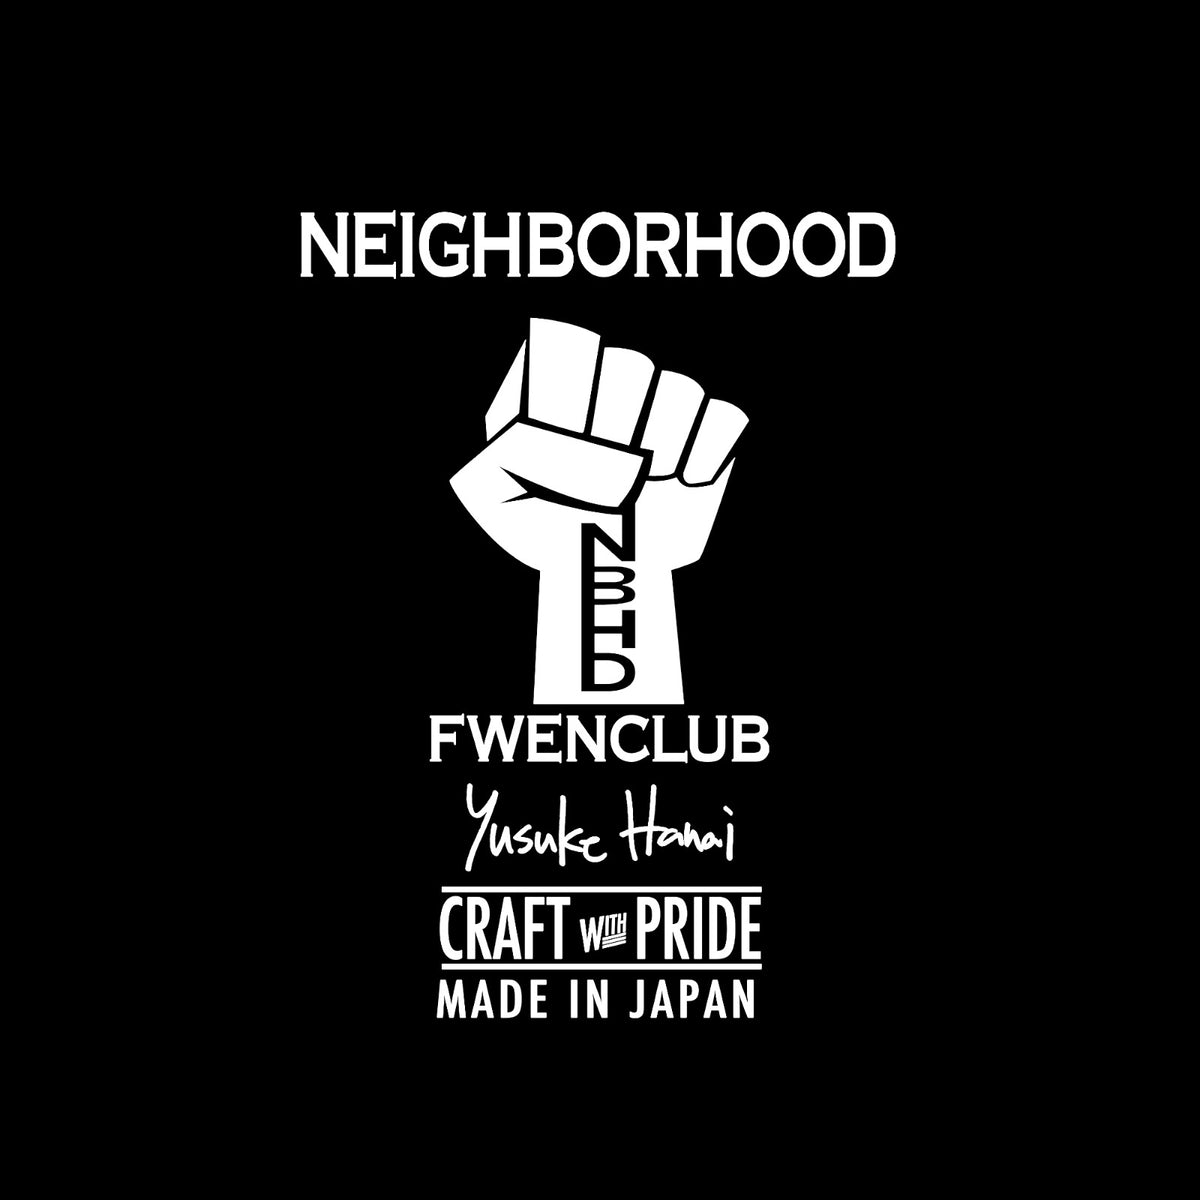 Fwenclub X Yusuke Hanai X Neighborhood – FWENCLUB